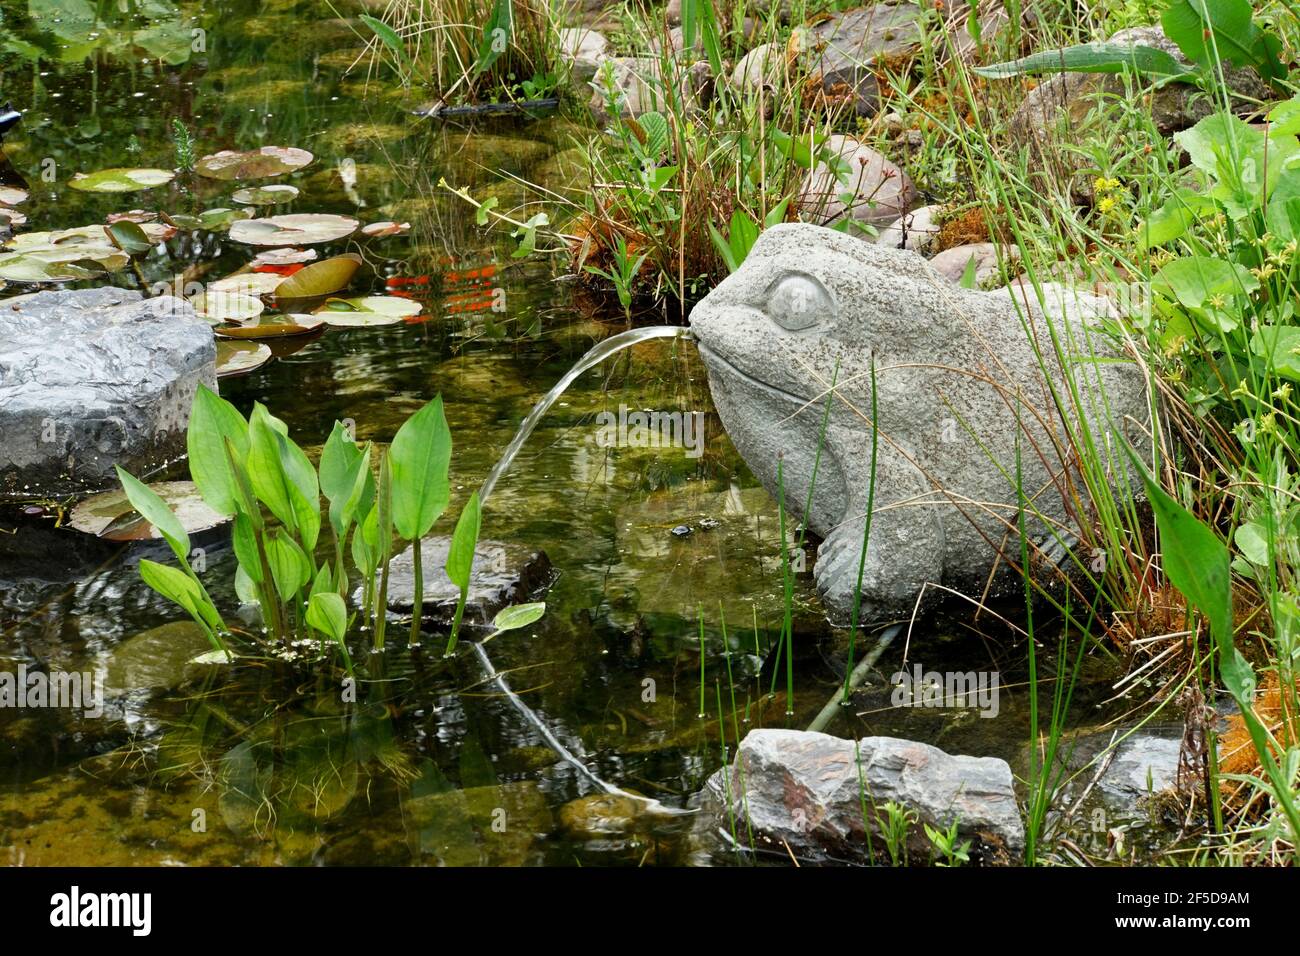 Rana de agua en el estanque del jardín, Alemania Foto de stock